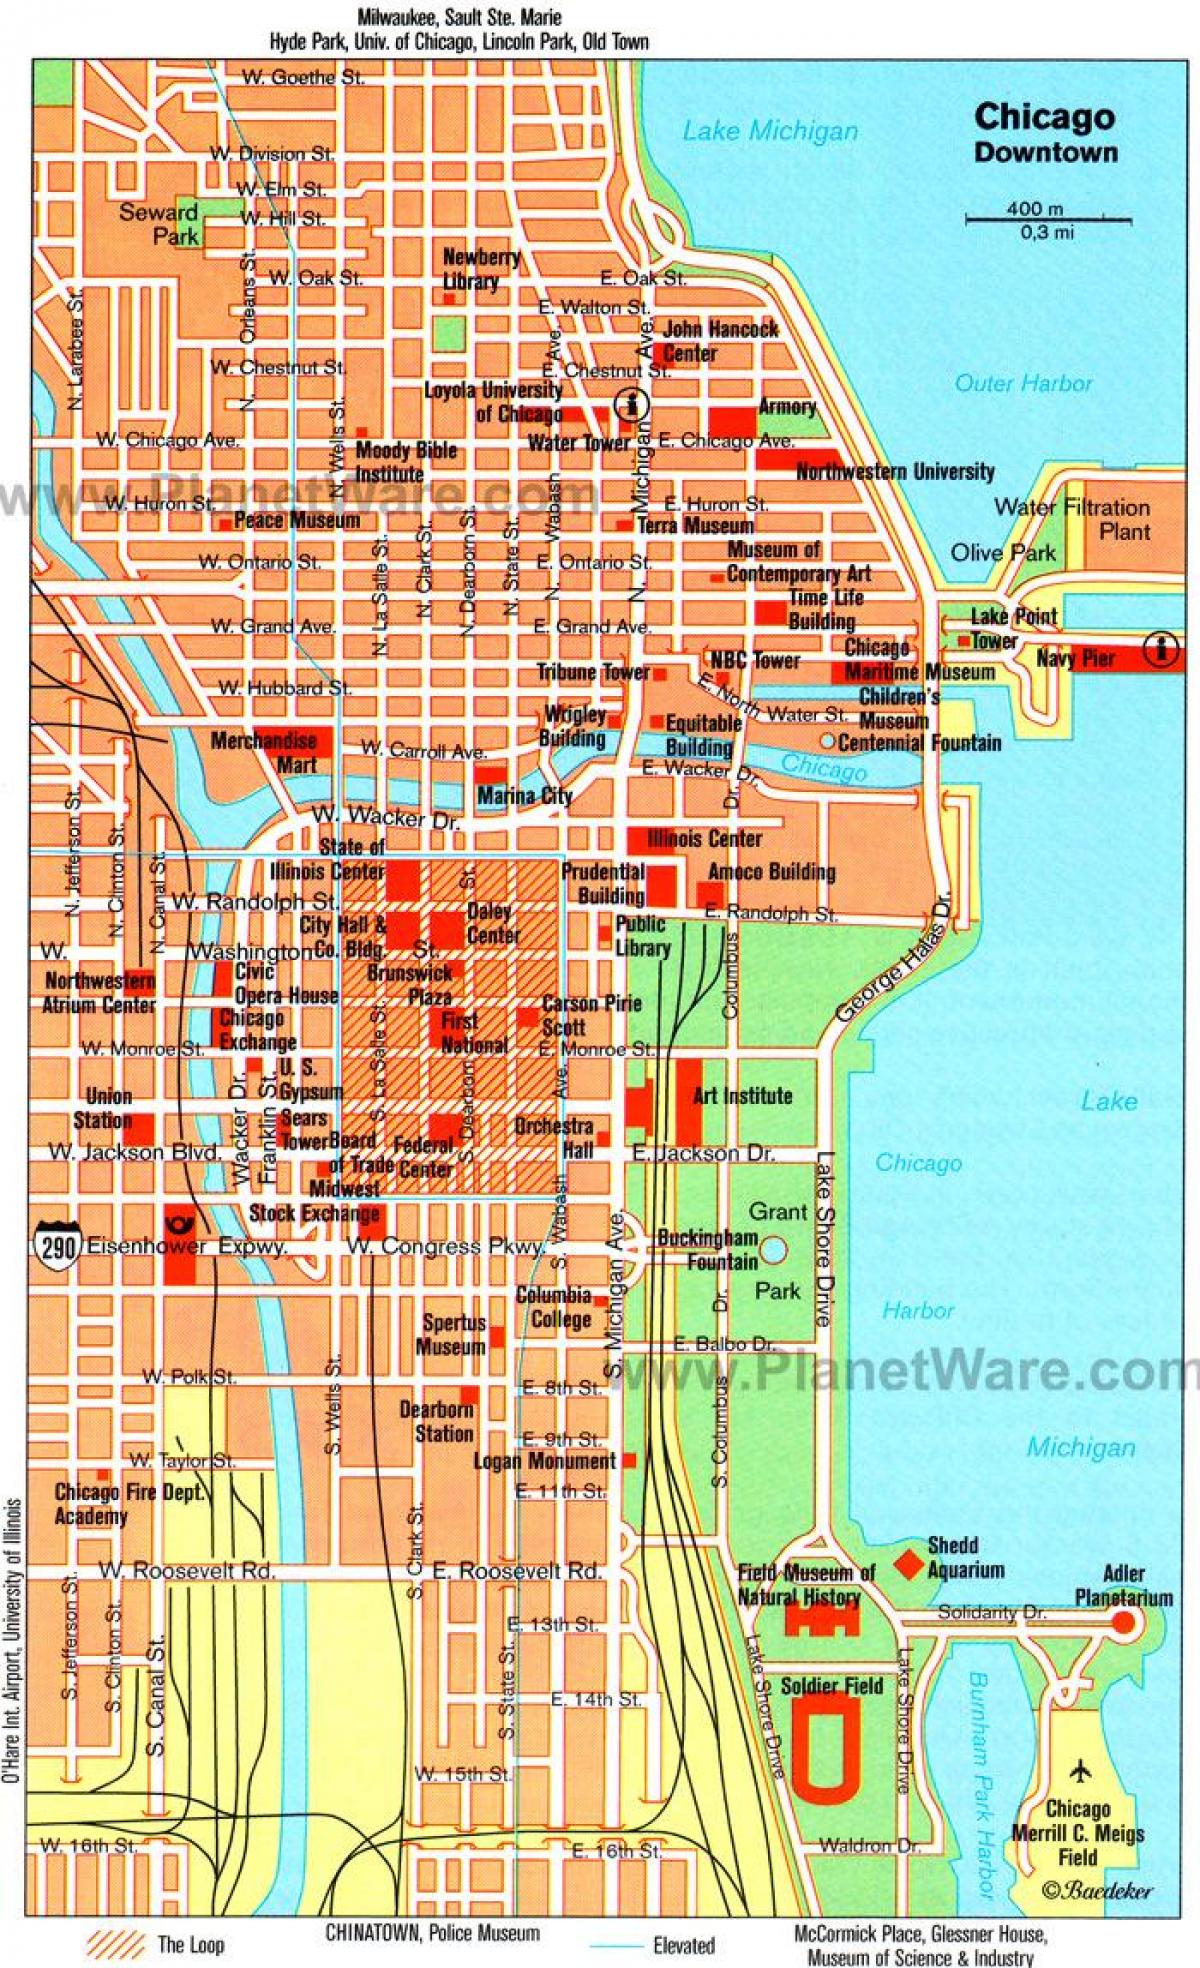 карта достопримечательностей Чикаго